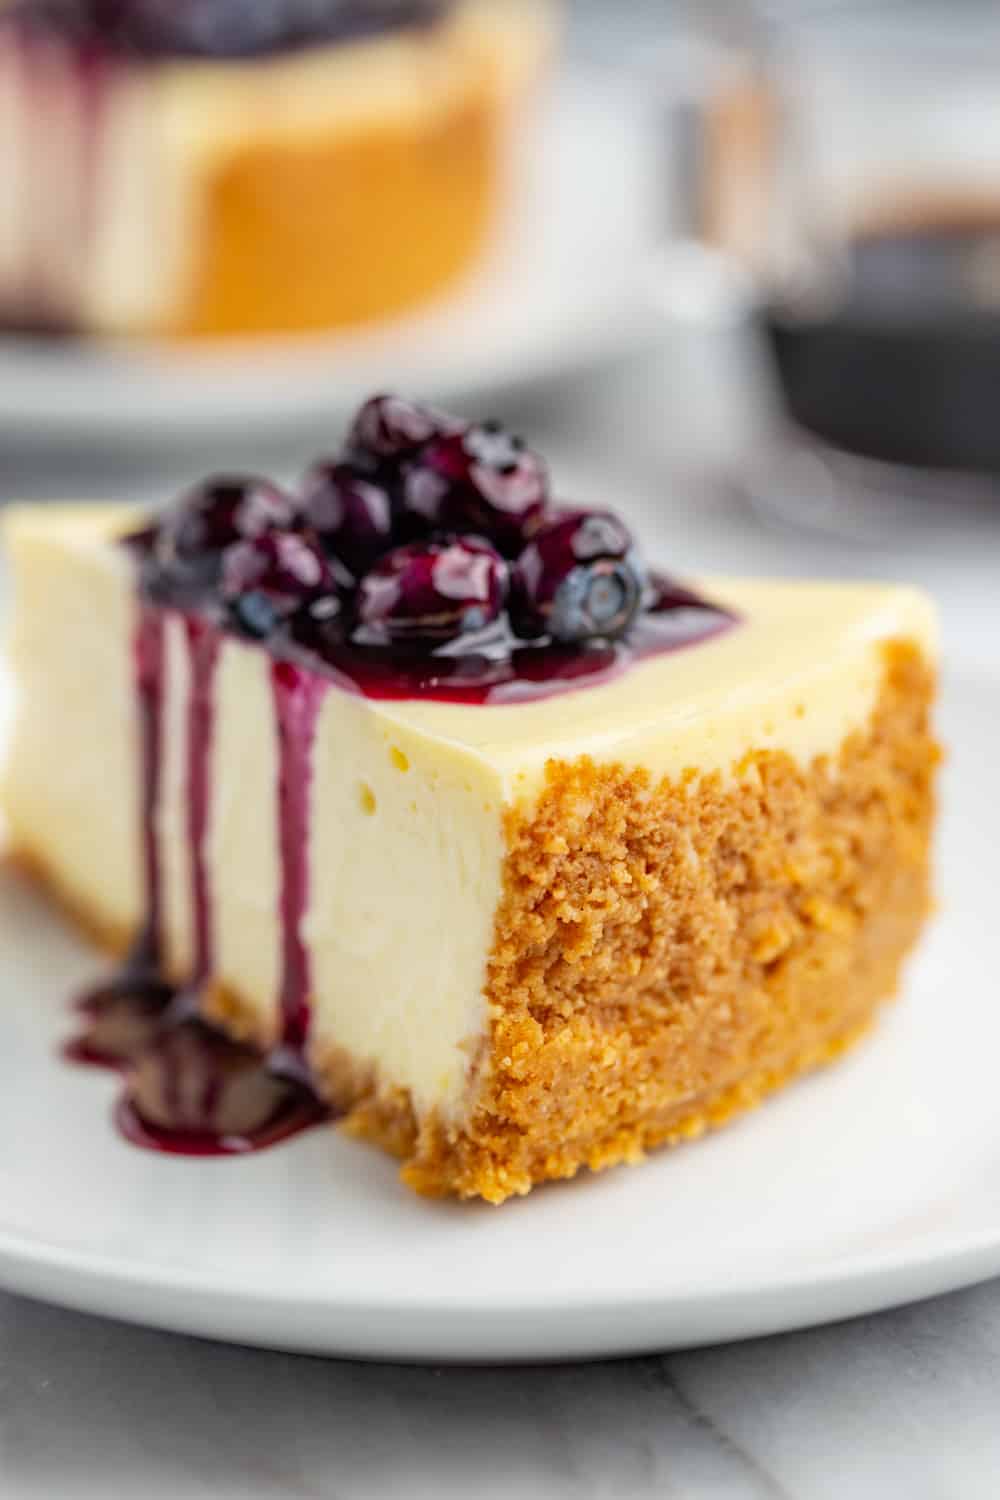 https://www.mybakingaddiction.com/wp-content/uploads/2019/07/Cheesecake-with-Blueberry-Sauce-54-of-61_resized.jpg